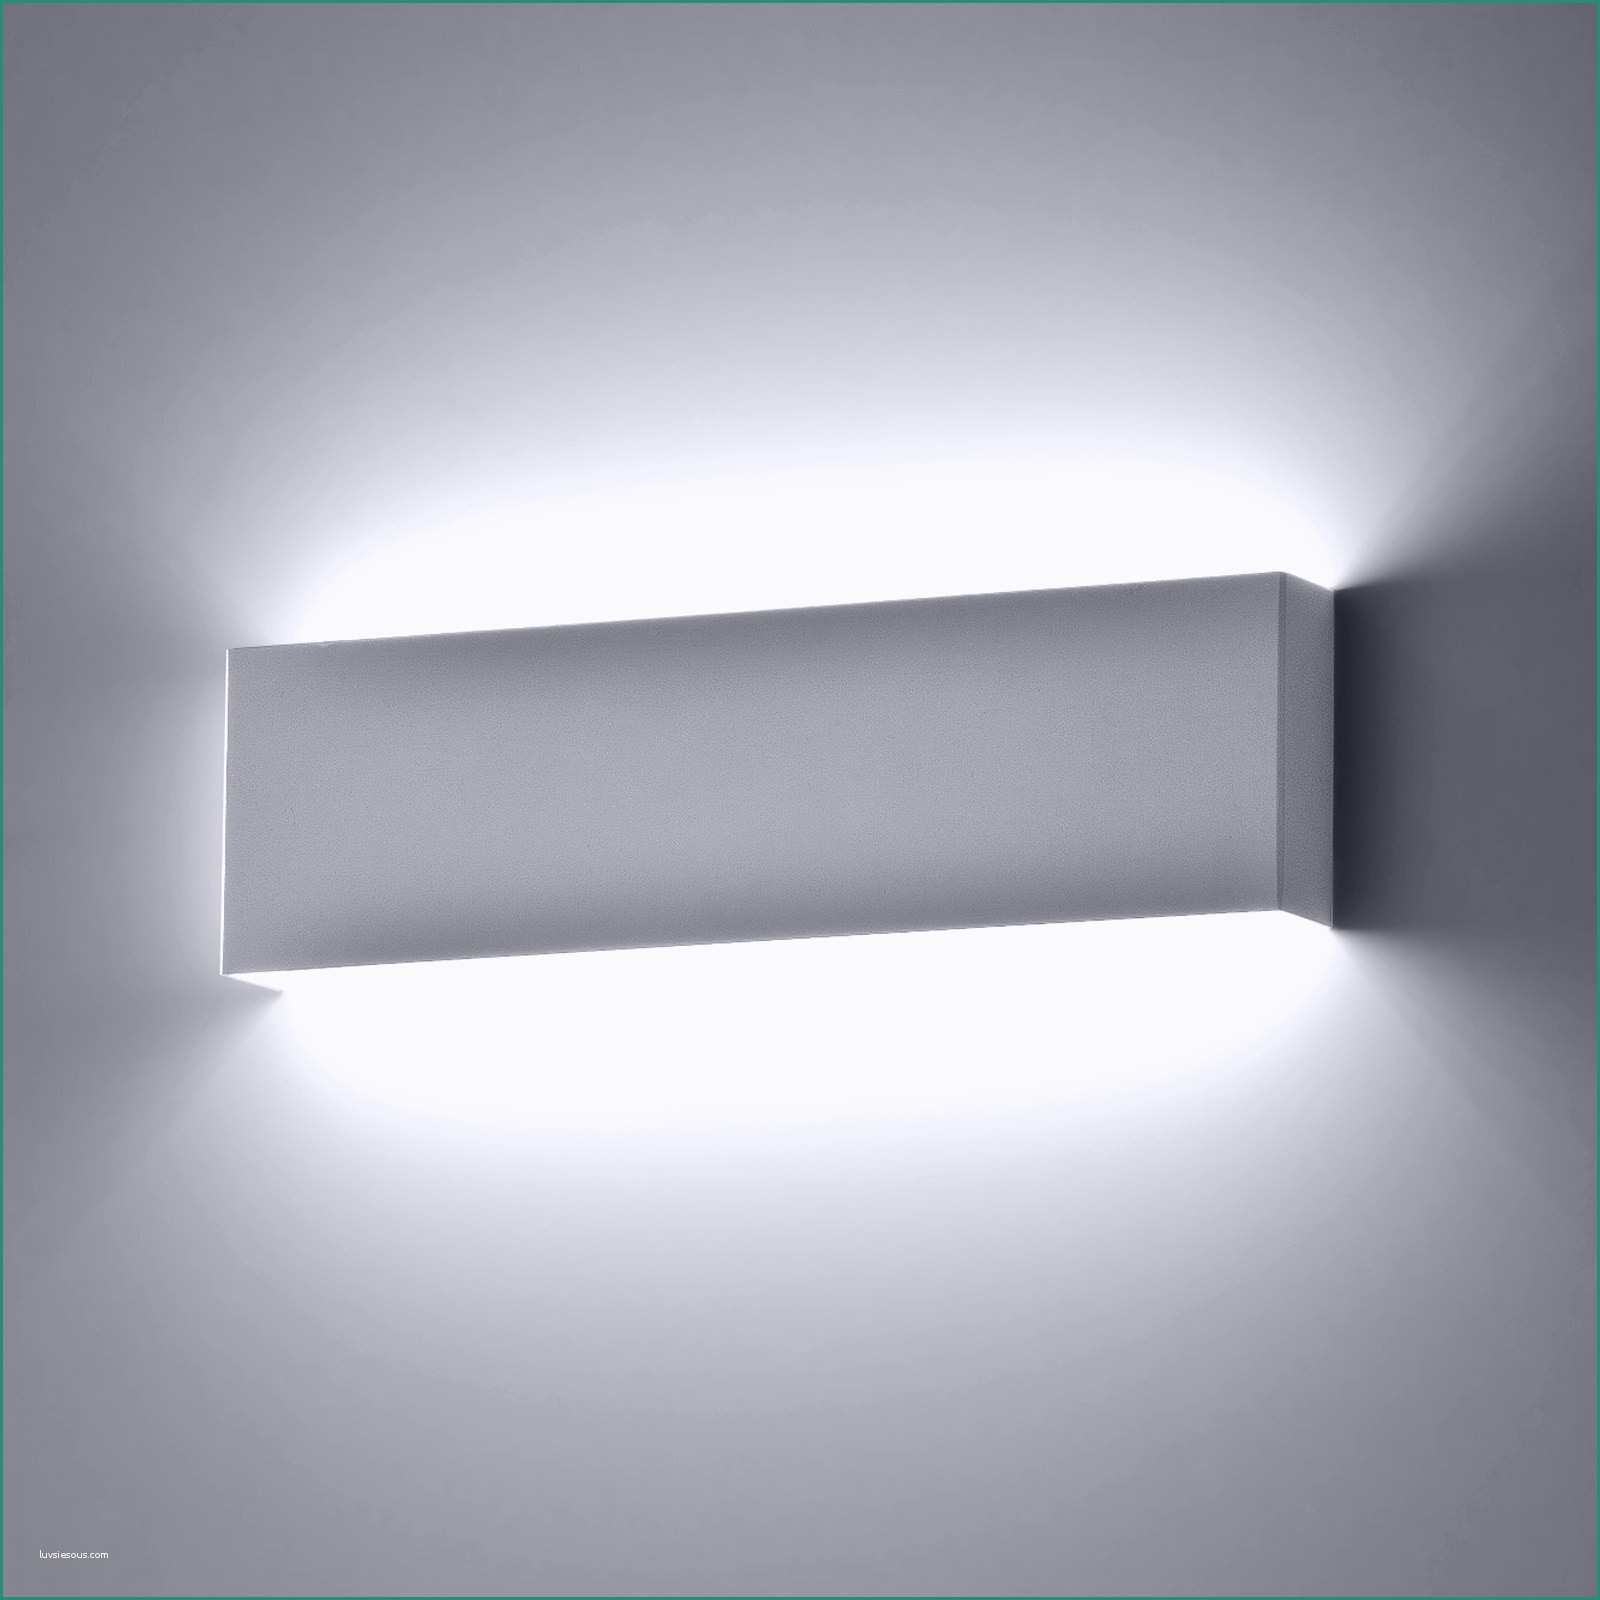 Lampadari A soffitto Moderni E Lampade Applique Elegante Rack Applique Leds C4 Illuminazione